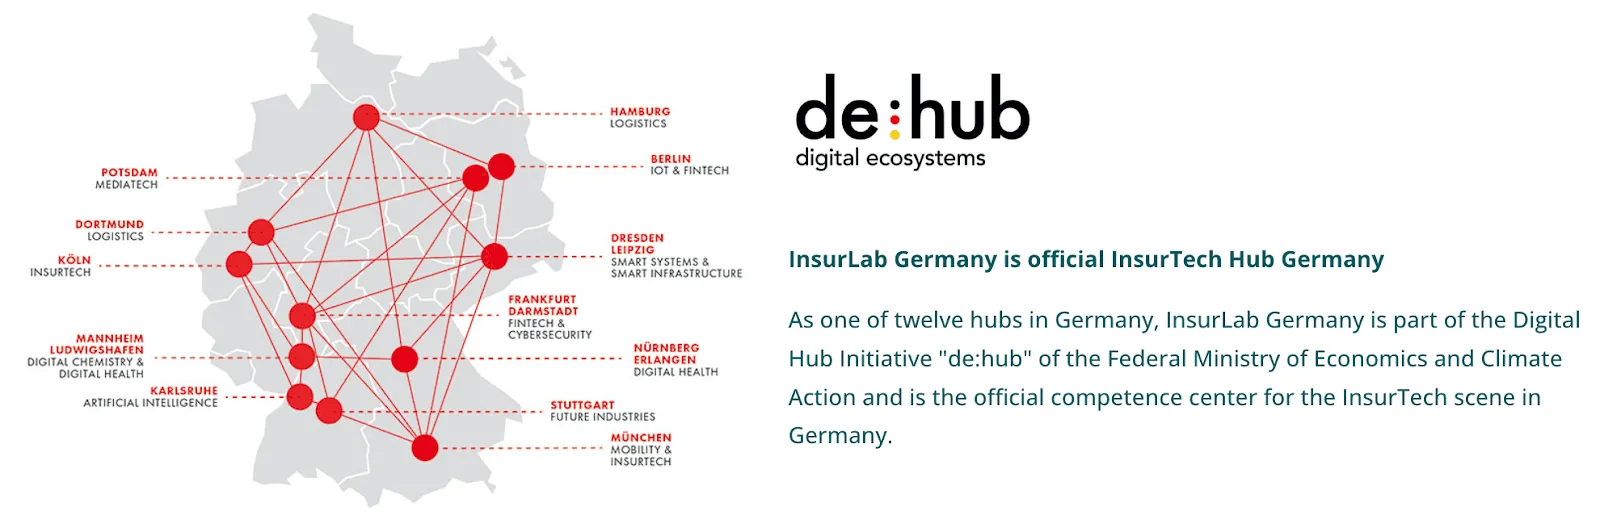 Als einer von zwölf Hubs in Deutschland ist das InsurLab Germany Teil der Digital Hub Initiative "de:hub" des Bundesministeriums für Wirtschaft und Klimaschutz und ist das offizielle Kompetenzzentrum für die InsurTech-Szene in Deutschland.